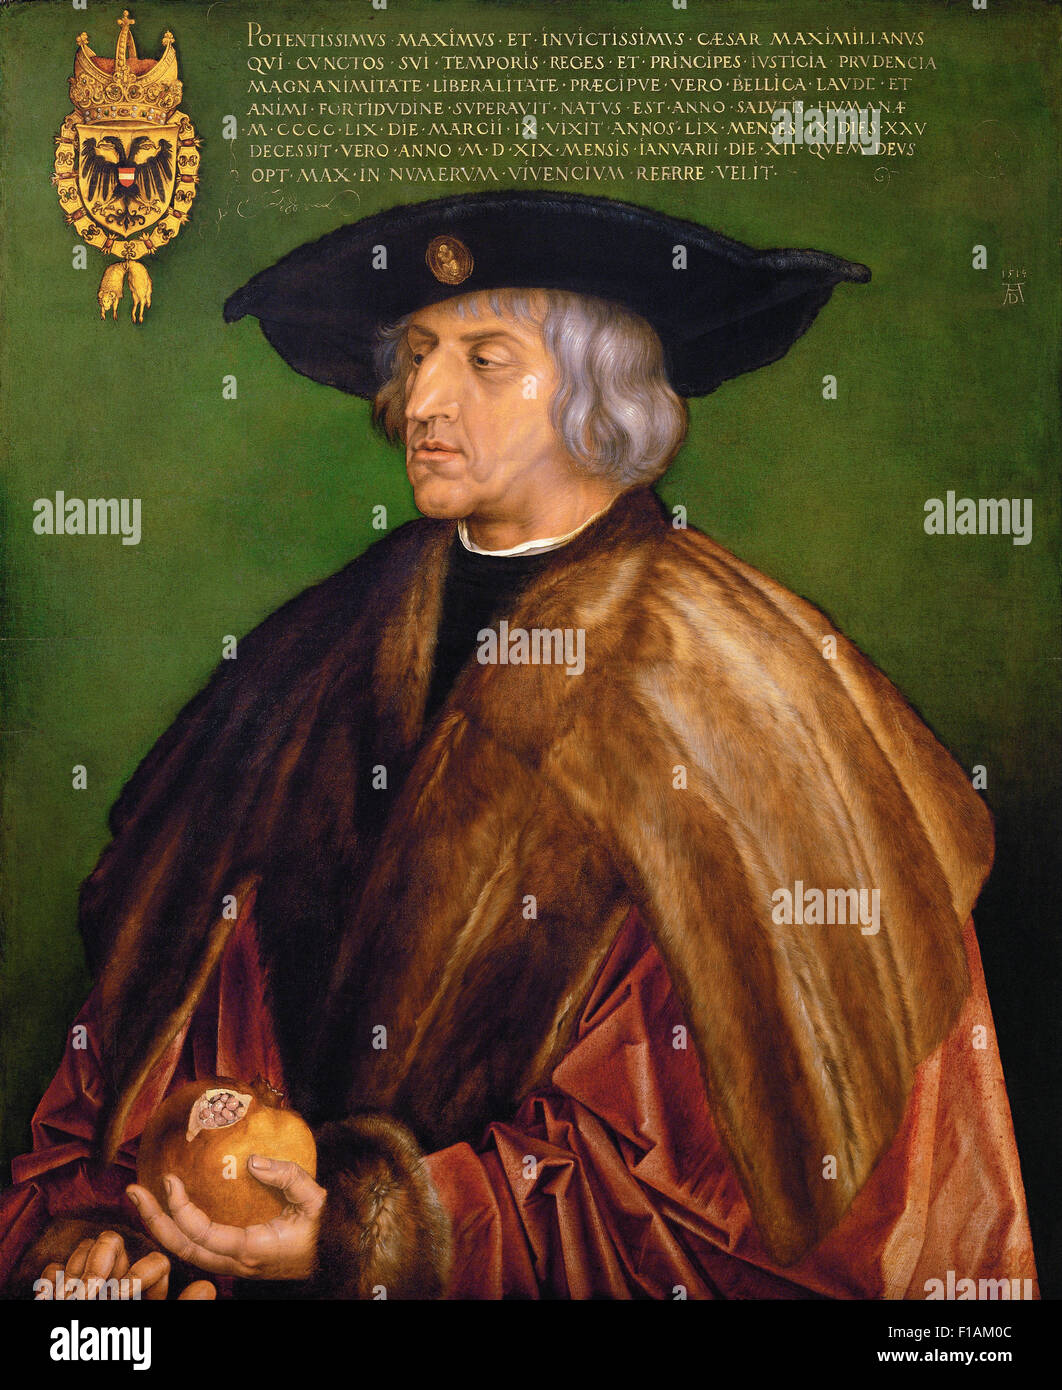 Alberto Durero - Retrato de Maximilian I. Foto de stock